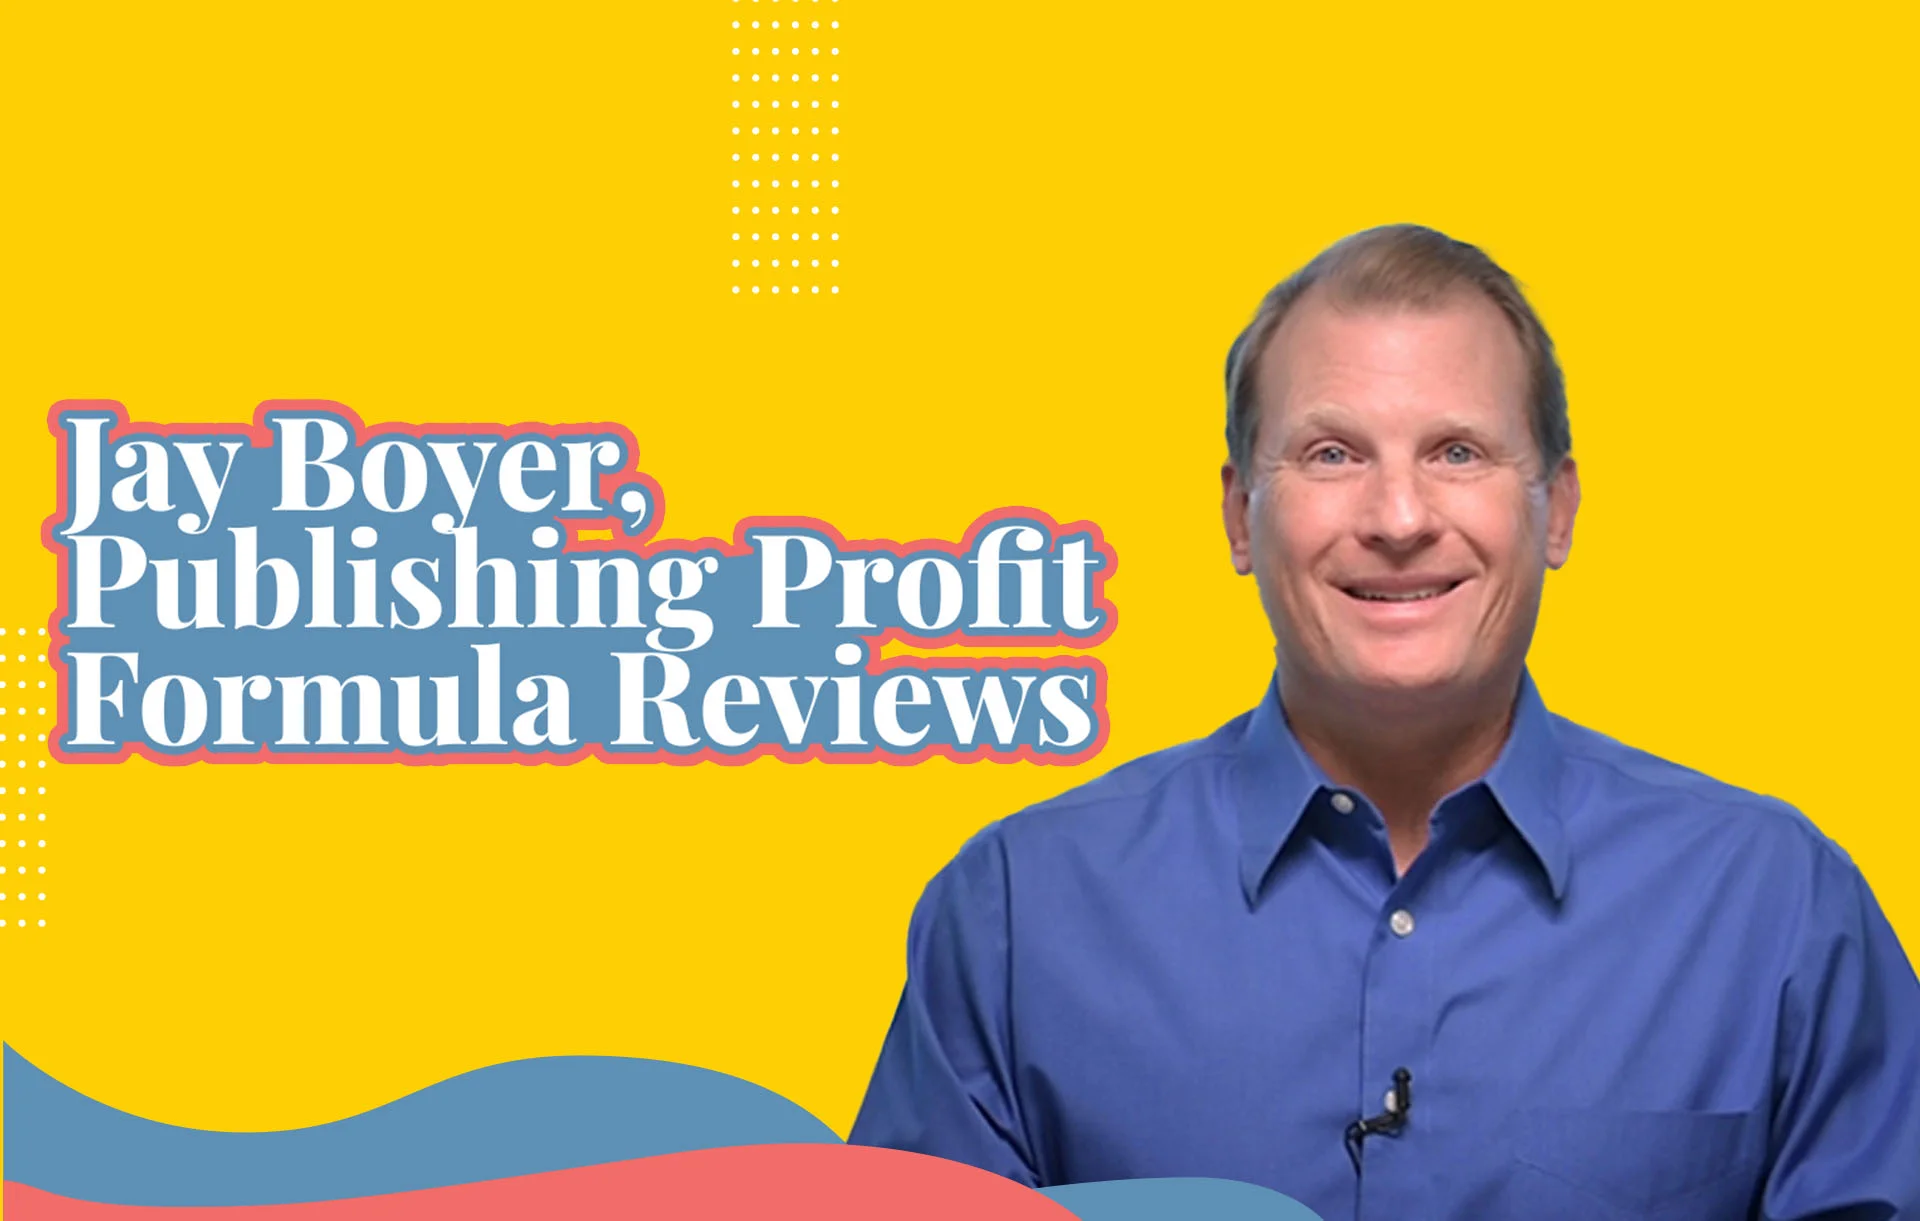 Jay Boyer, Publishing Profit Formula Reviews